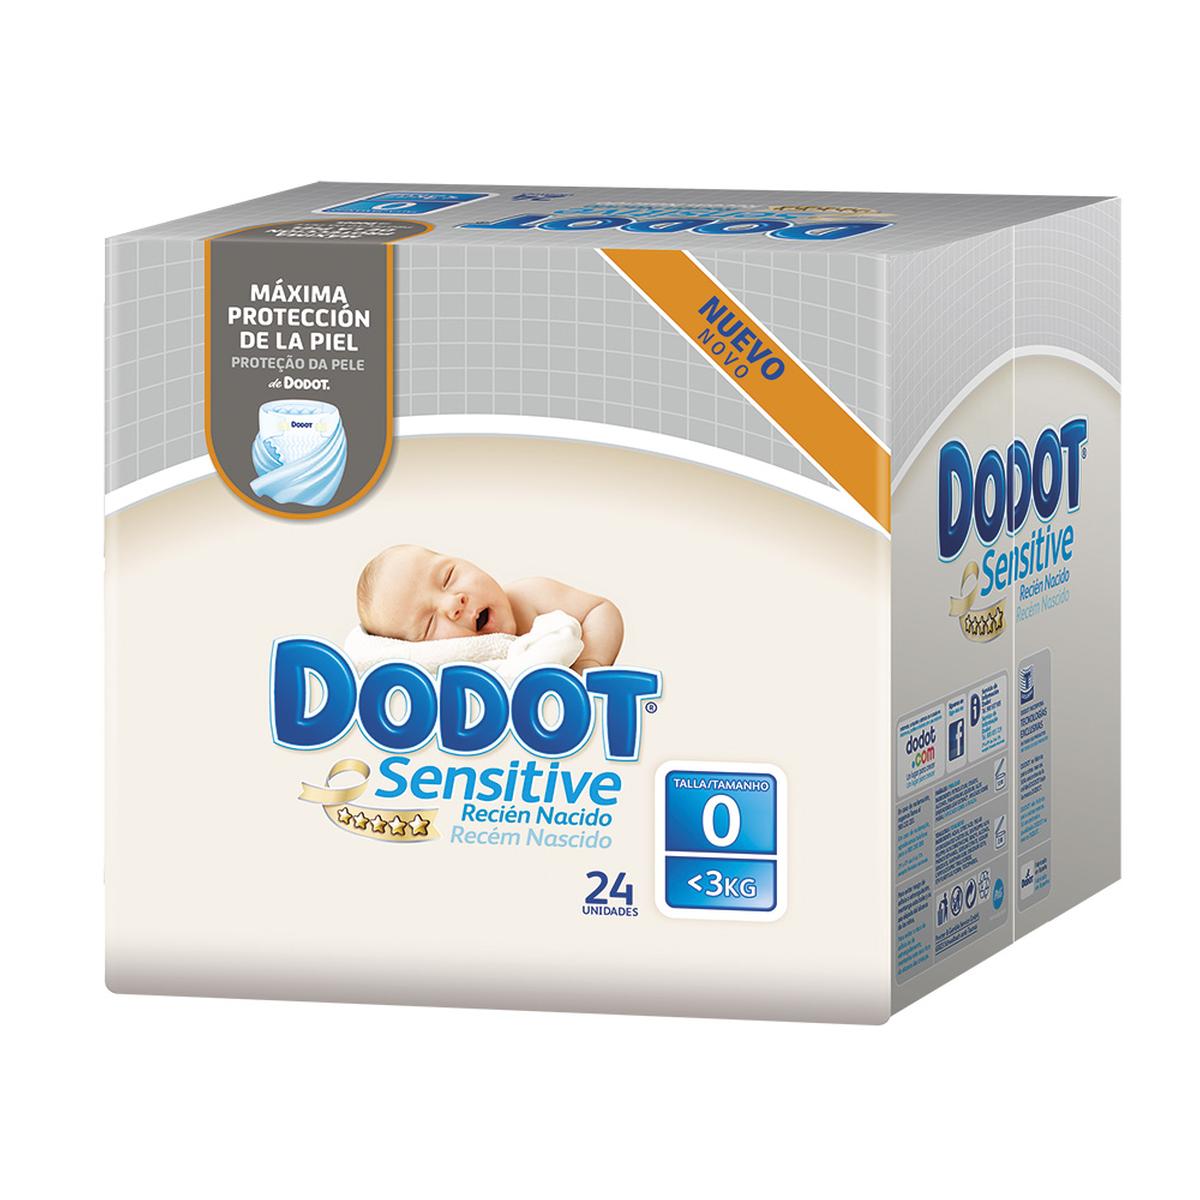 Dodot - Pañales Sensitive Recién Nacido T0 (1.5-2.5 kg) 24 unidades., Recien Nacido